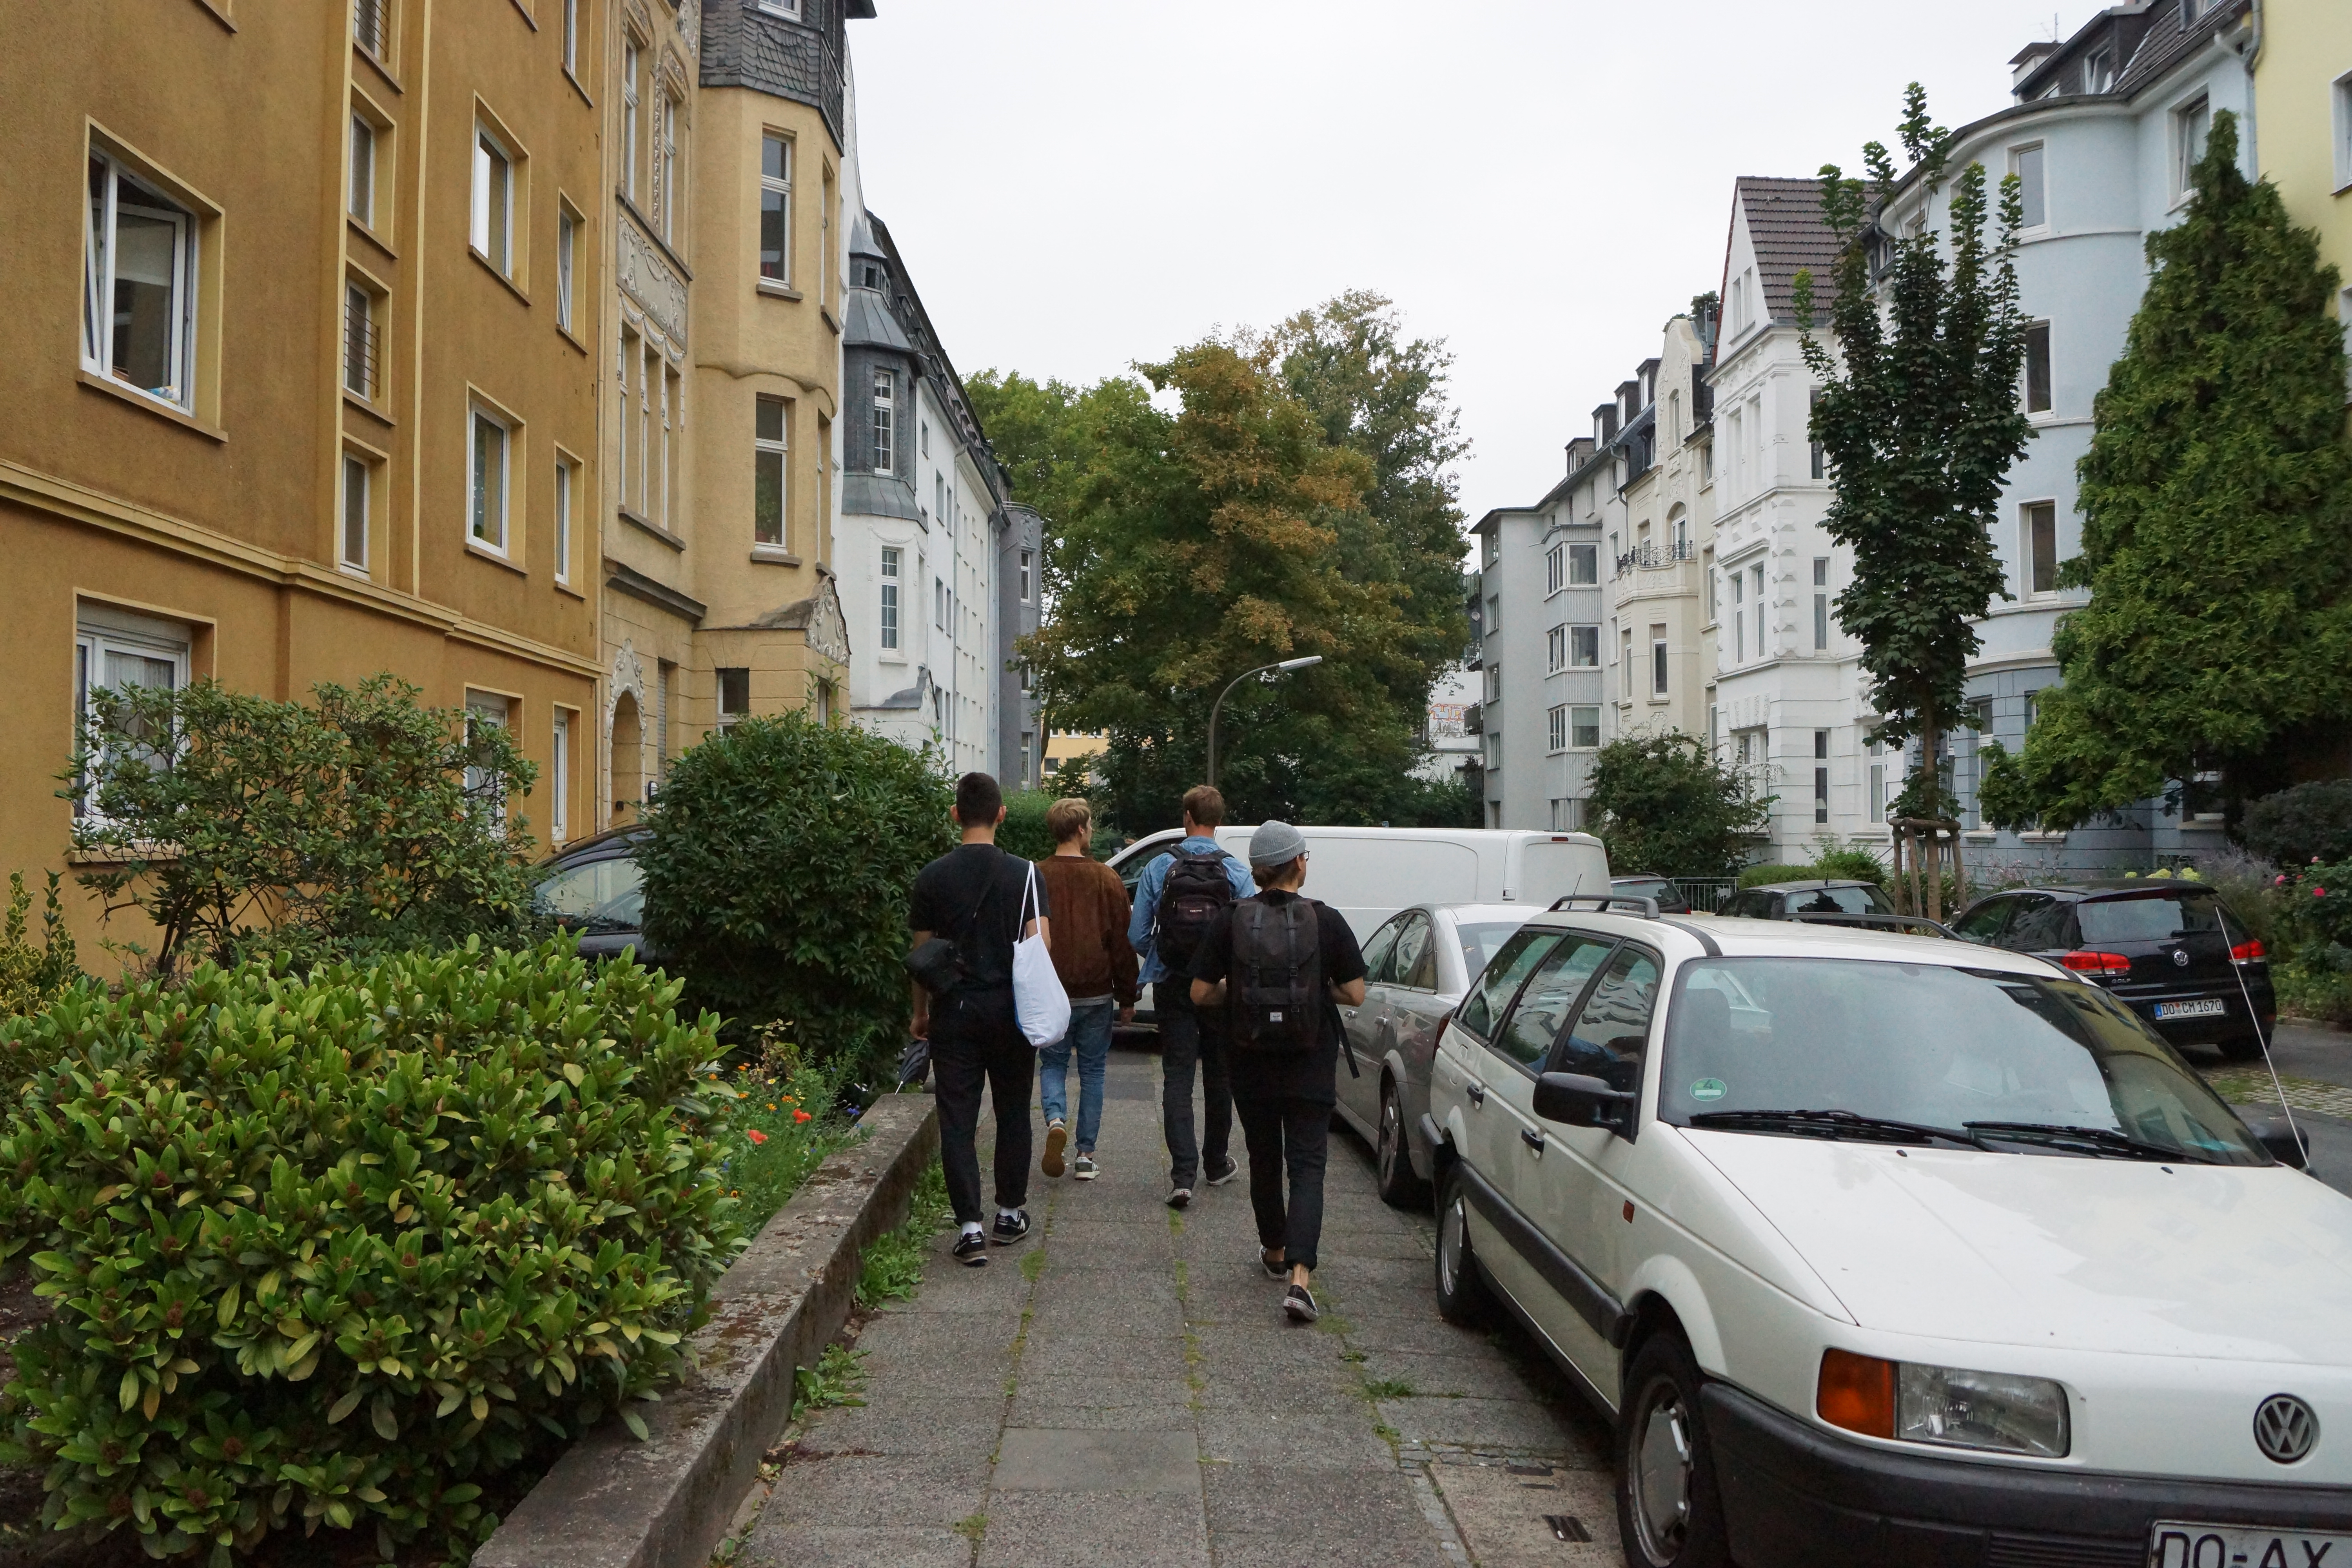 Walking through Kreuzviertel. Photo by Nicole Stieben